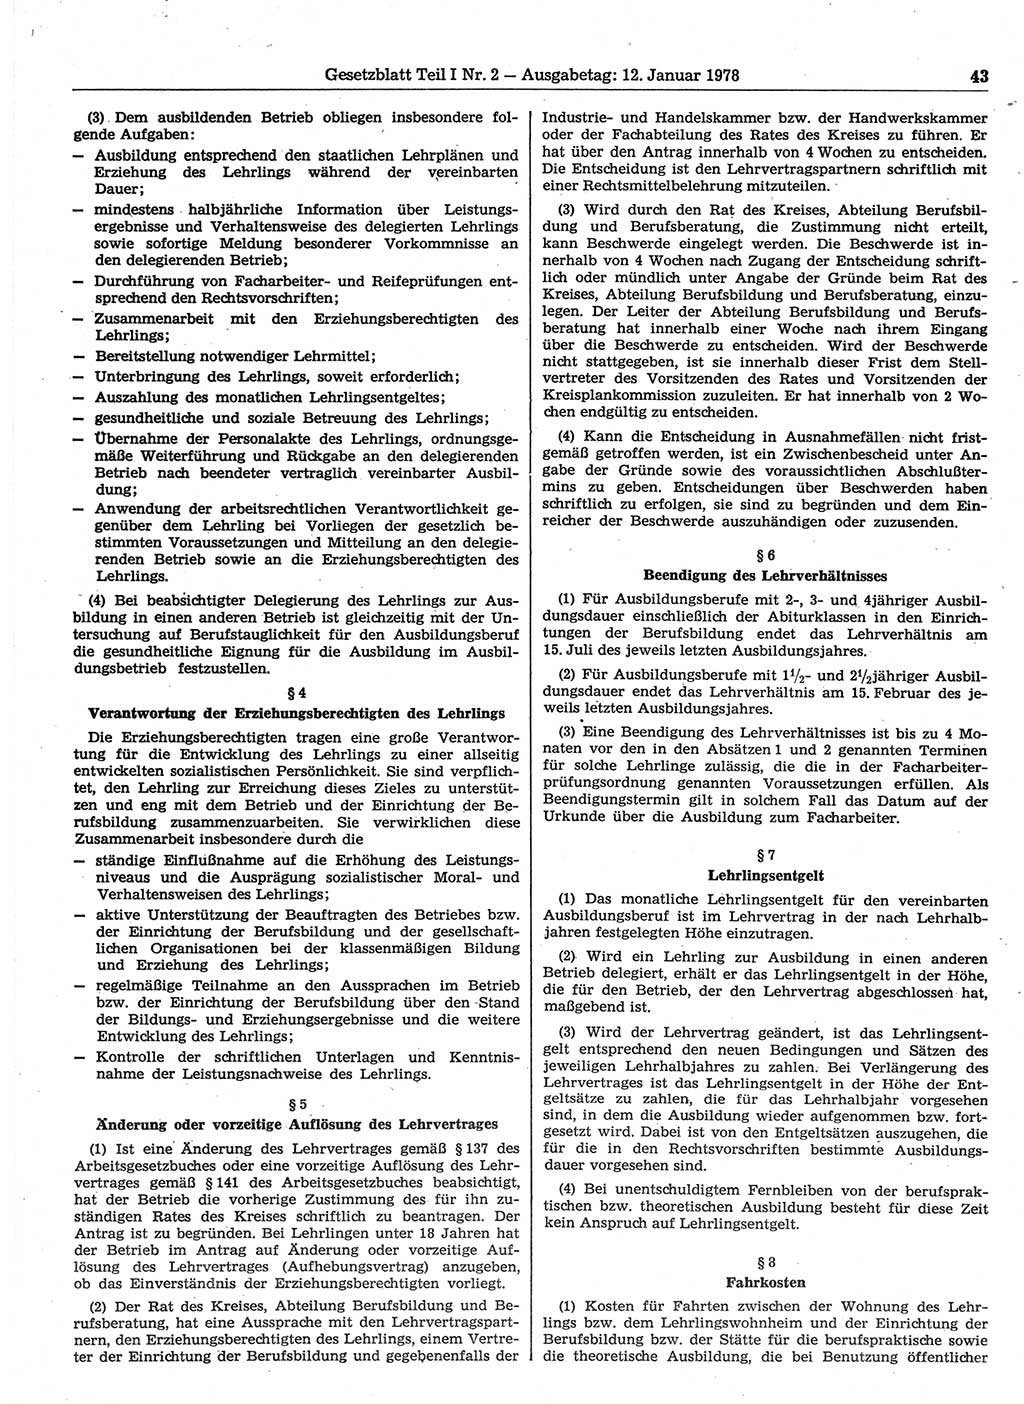 Gesetzblatt (GBl.) der Deutschen Demokratischen Republik (DDR) Teil Ⅰ 1978, Seite 43 (GBl. DDR Ⅰ 1978, S. 43)